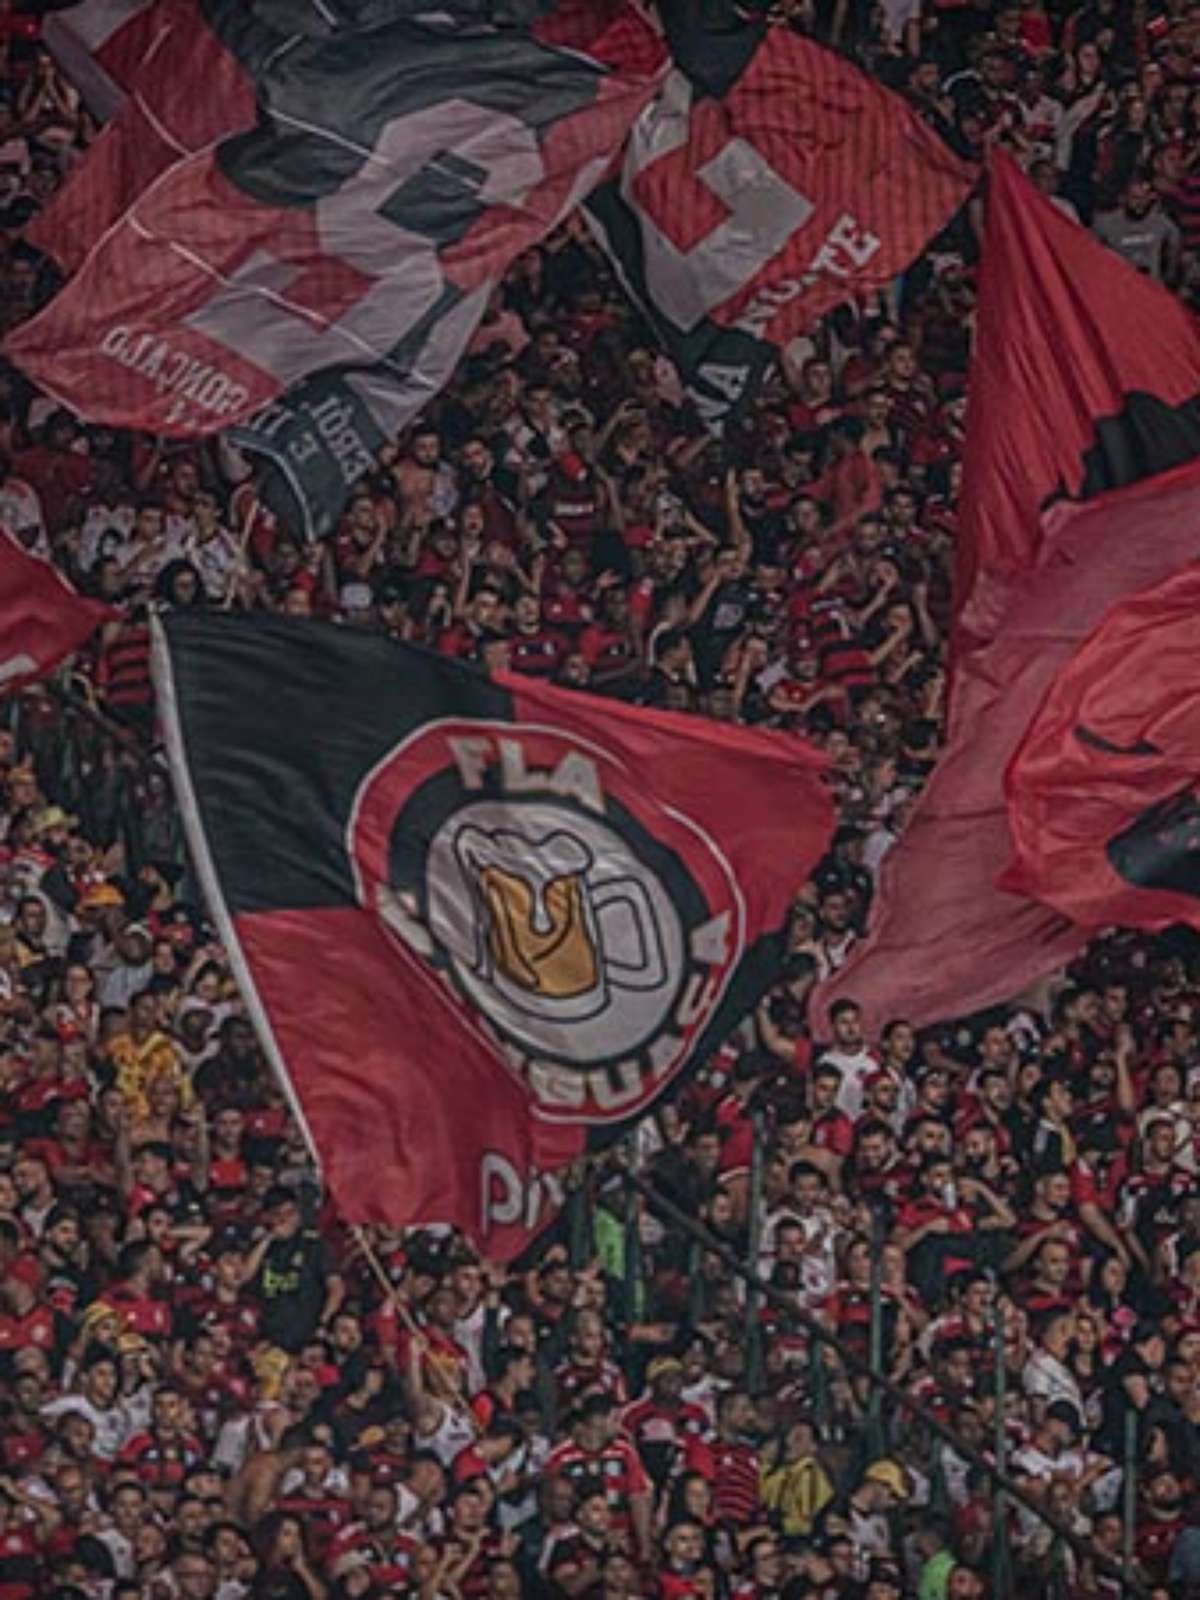 Casa cheia! Ingressos para América-MG e Flamengo estão esgotados